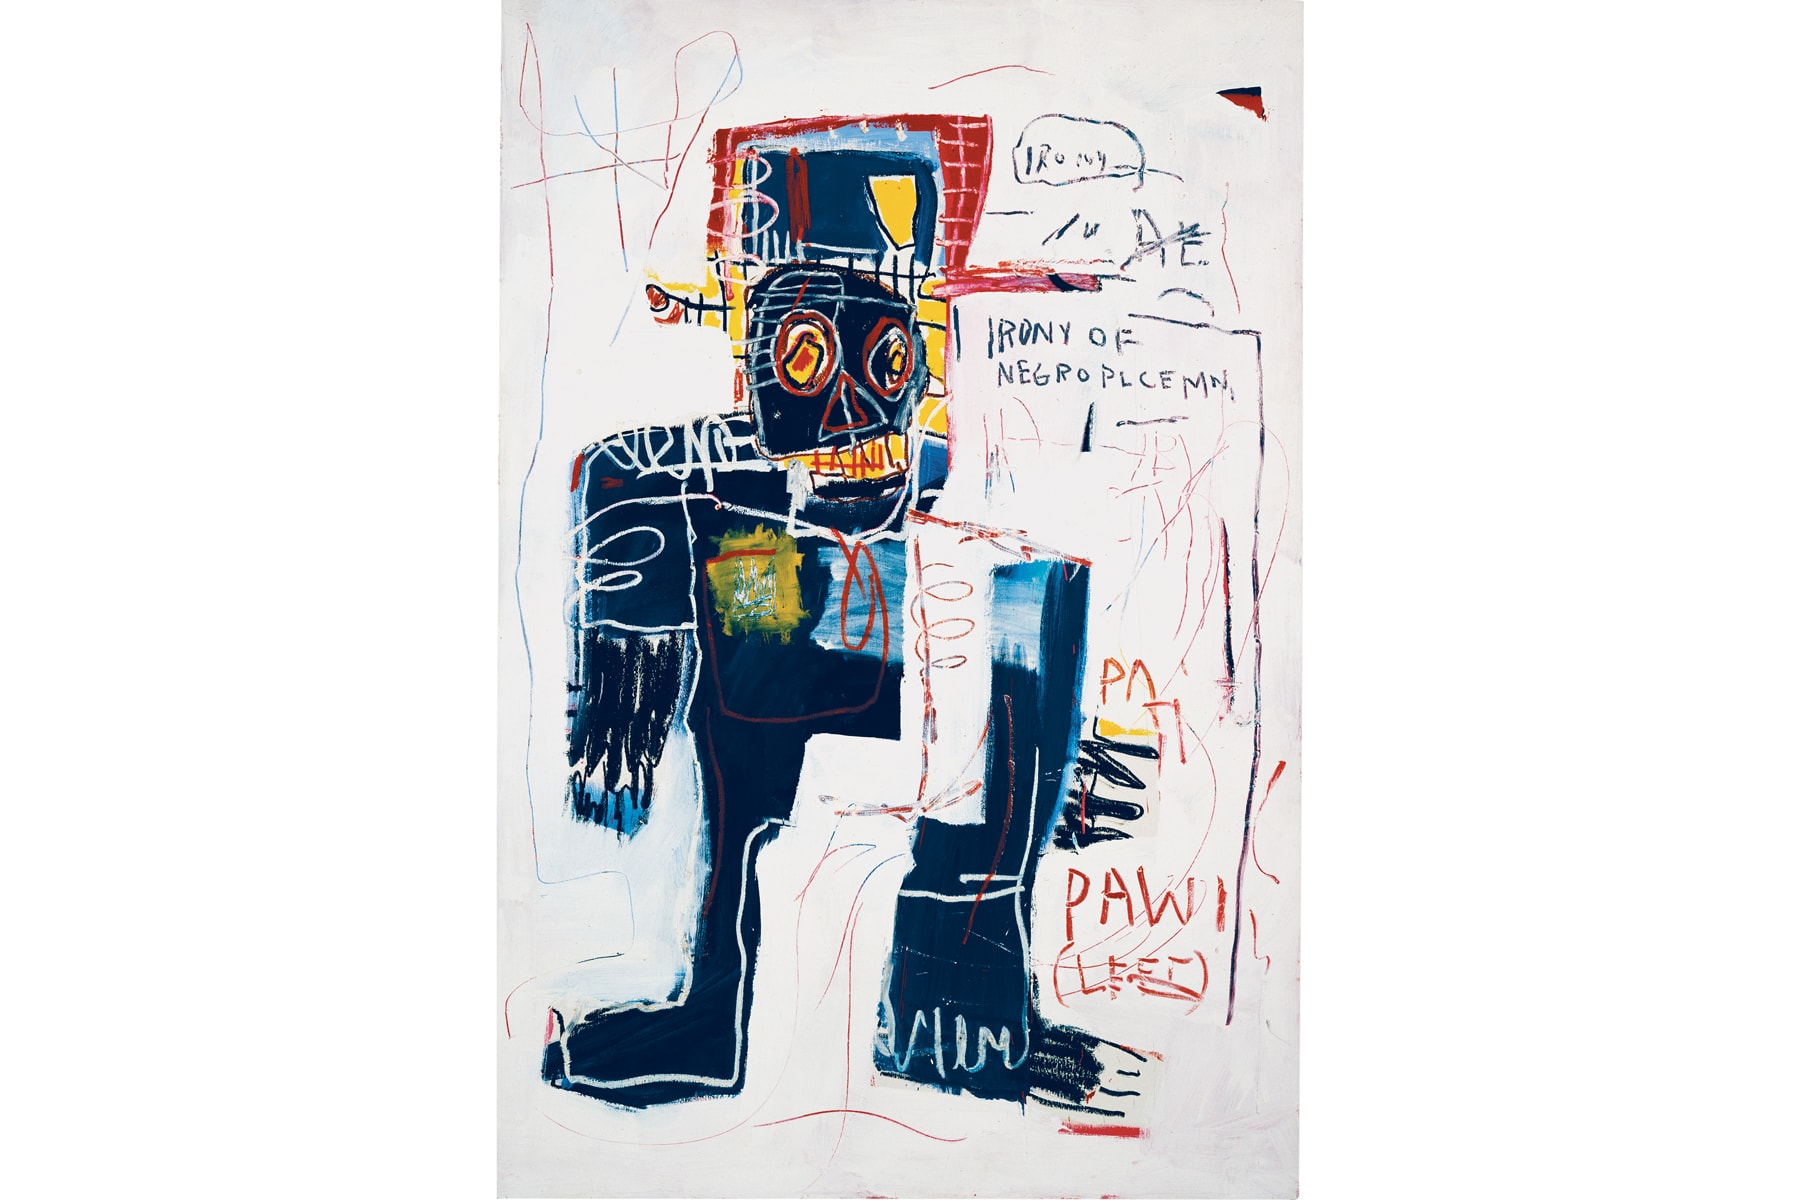 fondation louis vuitton jean michel basquiat egon schiele retrospective exhibitions shows art artworks paintings